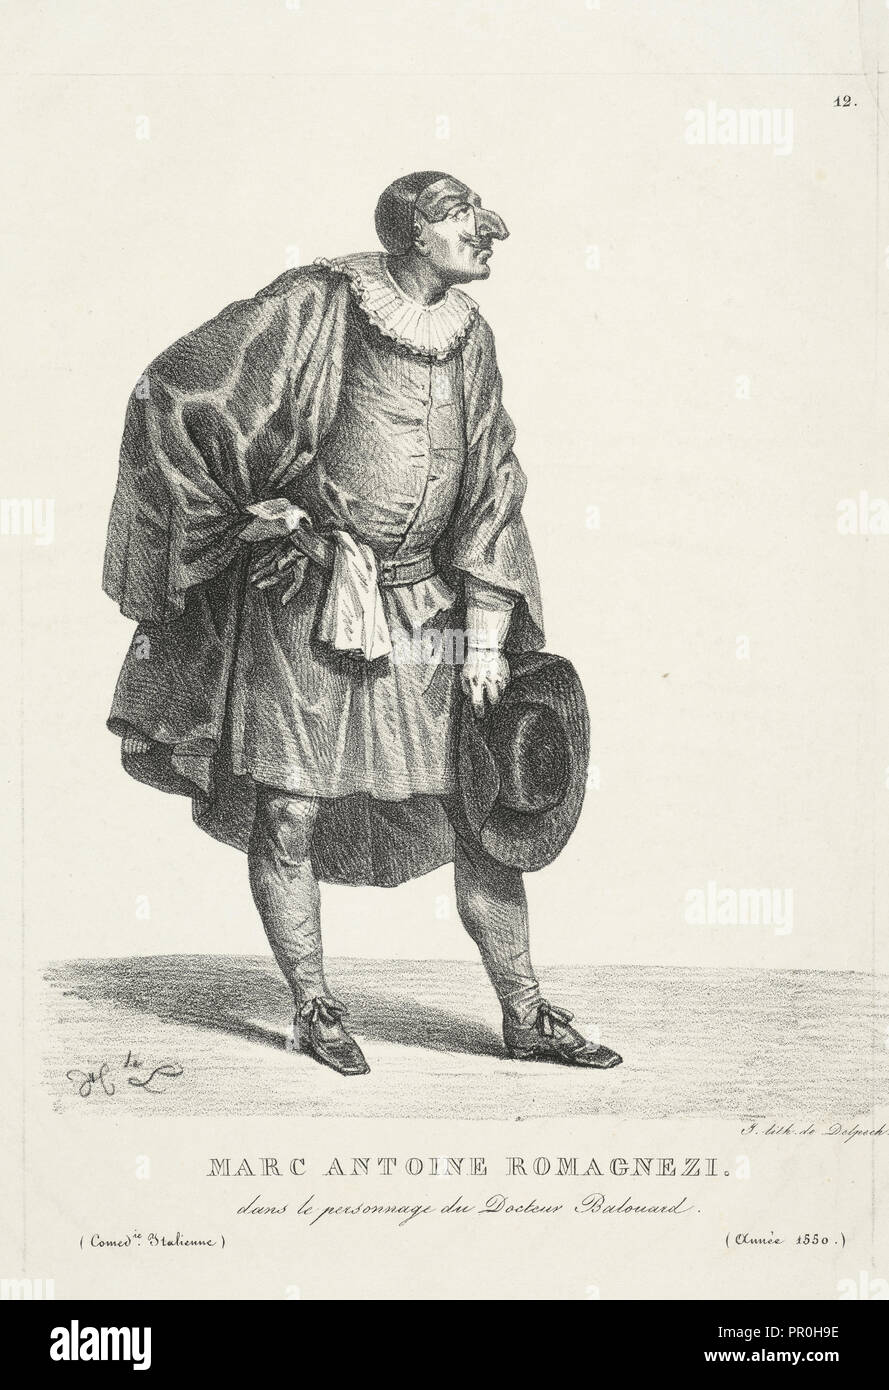 Marc Antoine Romagnezi dans le personnage du docteur Balouard, italienische Theater druckt, Kreide Lithographie, 1550 Stockfoto